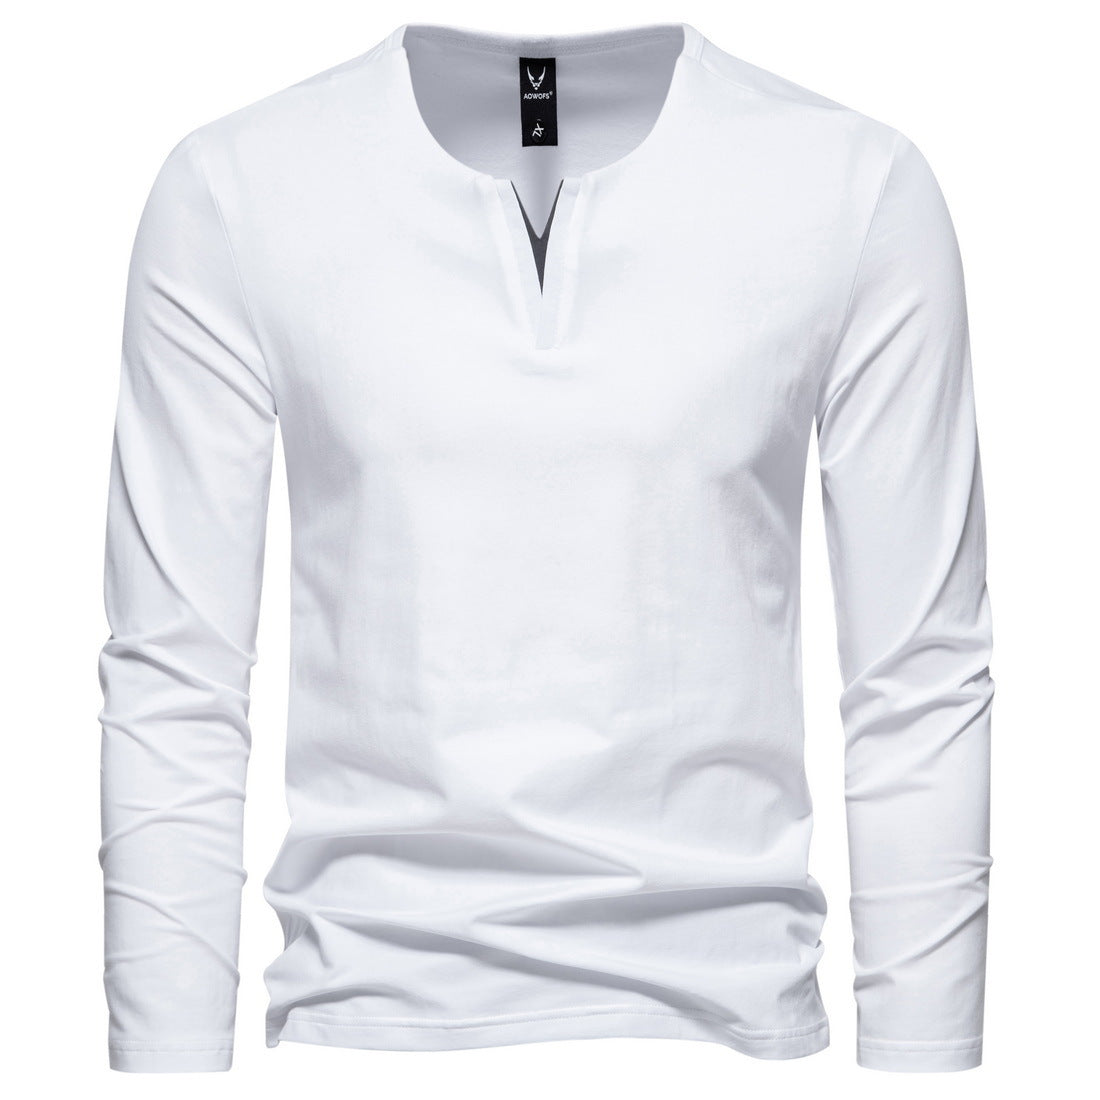 Men's V-neck Long Sleeve Bottoming T-shirt - Carvan Mart